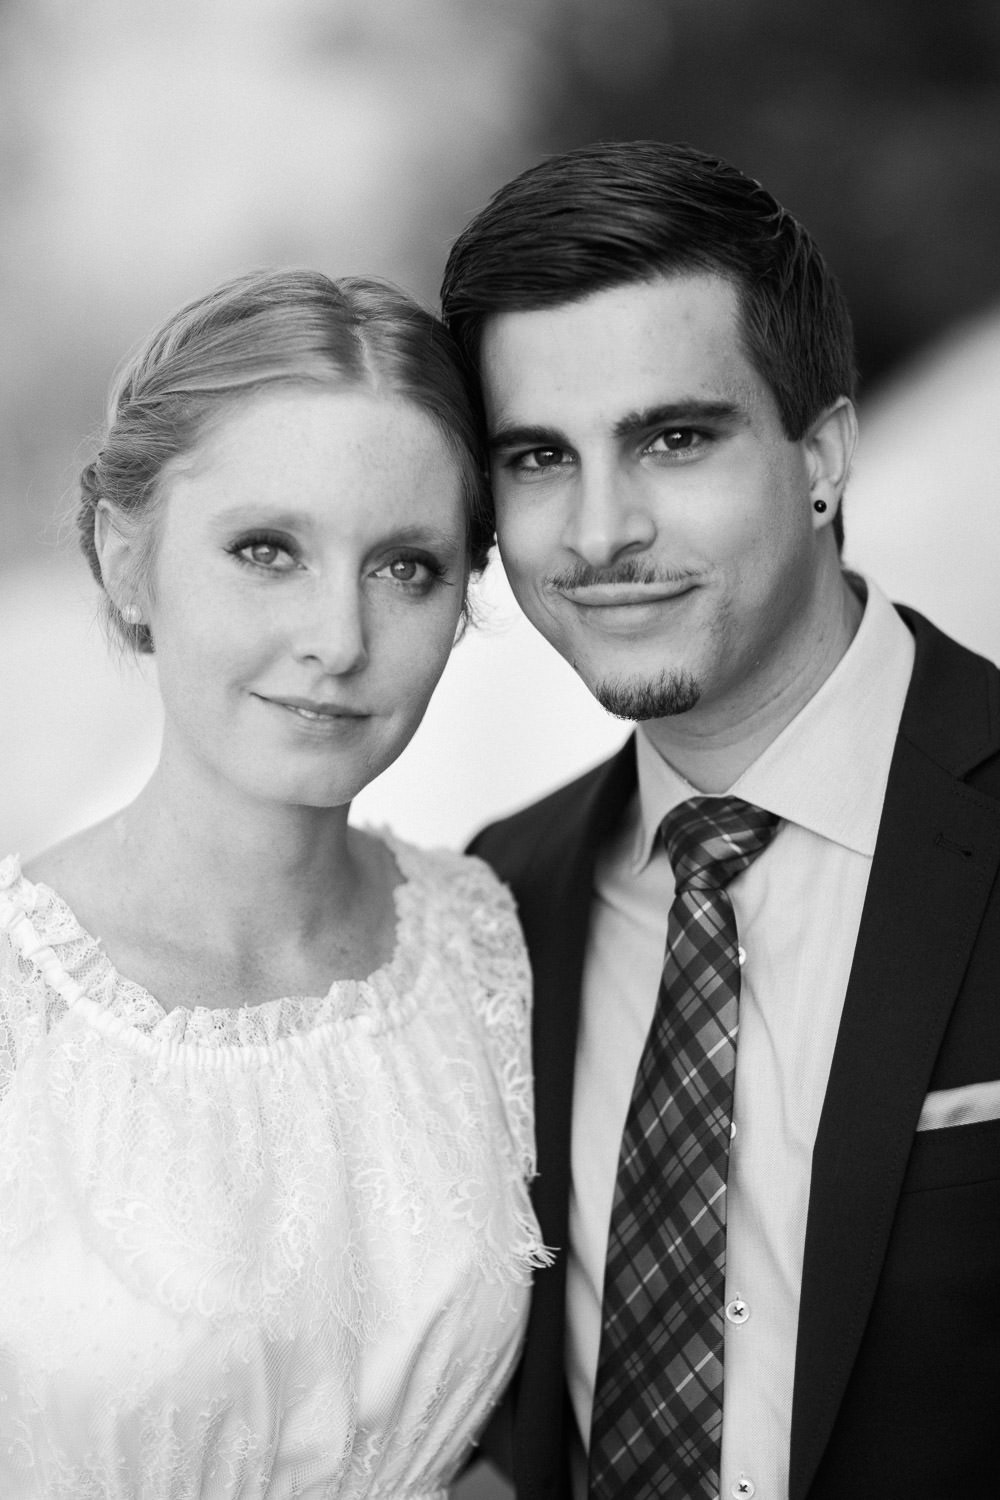 Maleana Hochzeitsfotos: Schwarzweiss Portaits